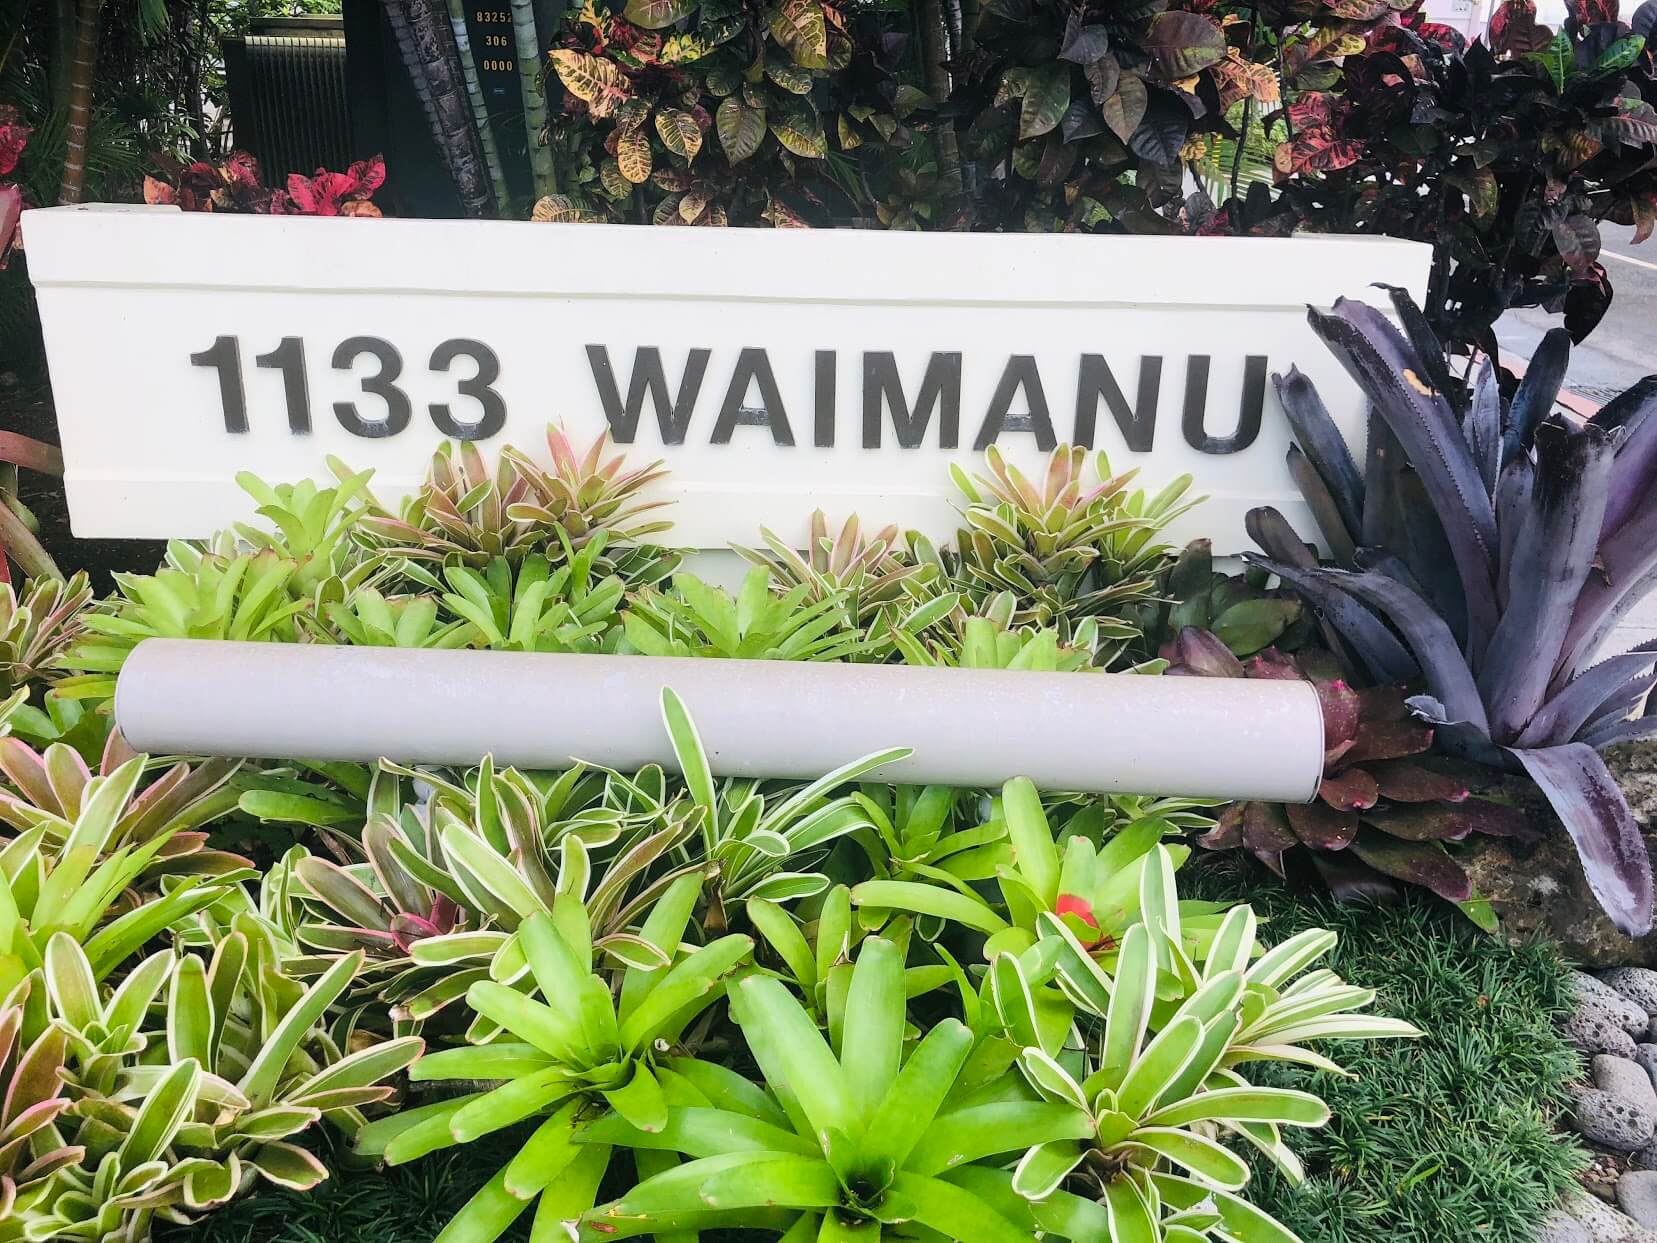 1133 Waimanuの看板